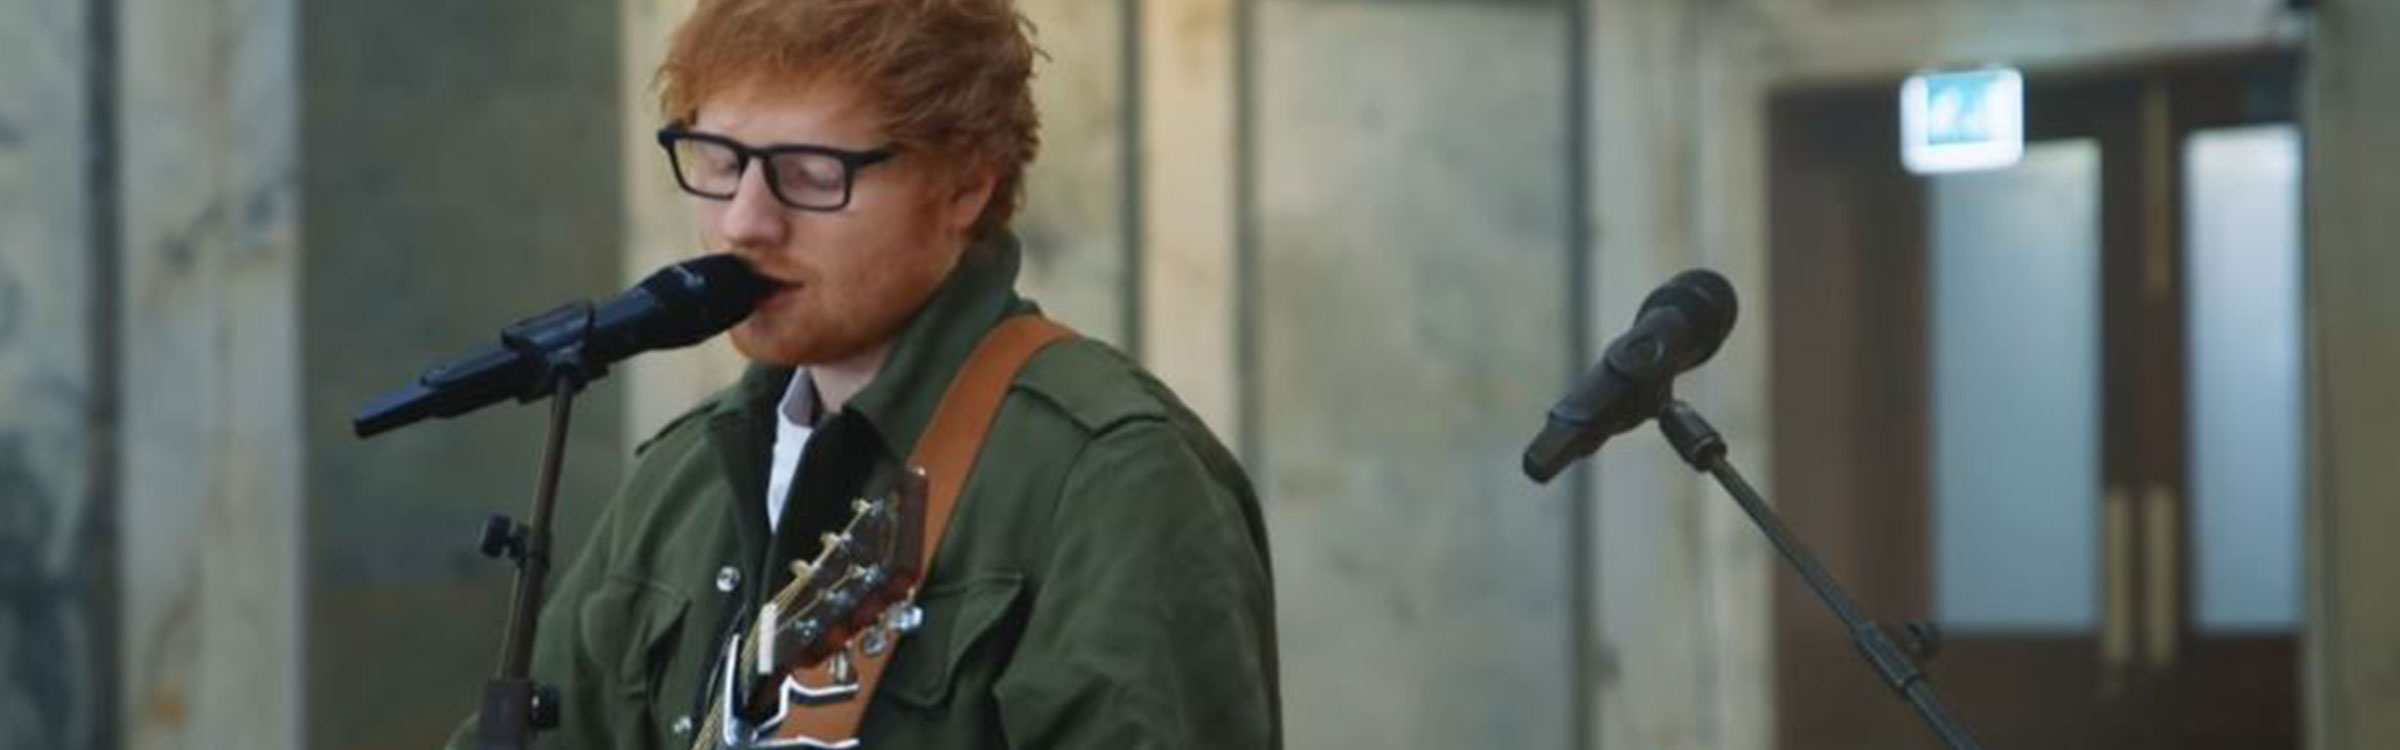 Ed sheeran header 9 maart